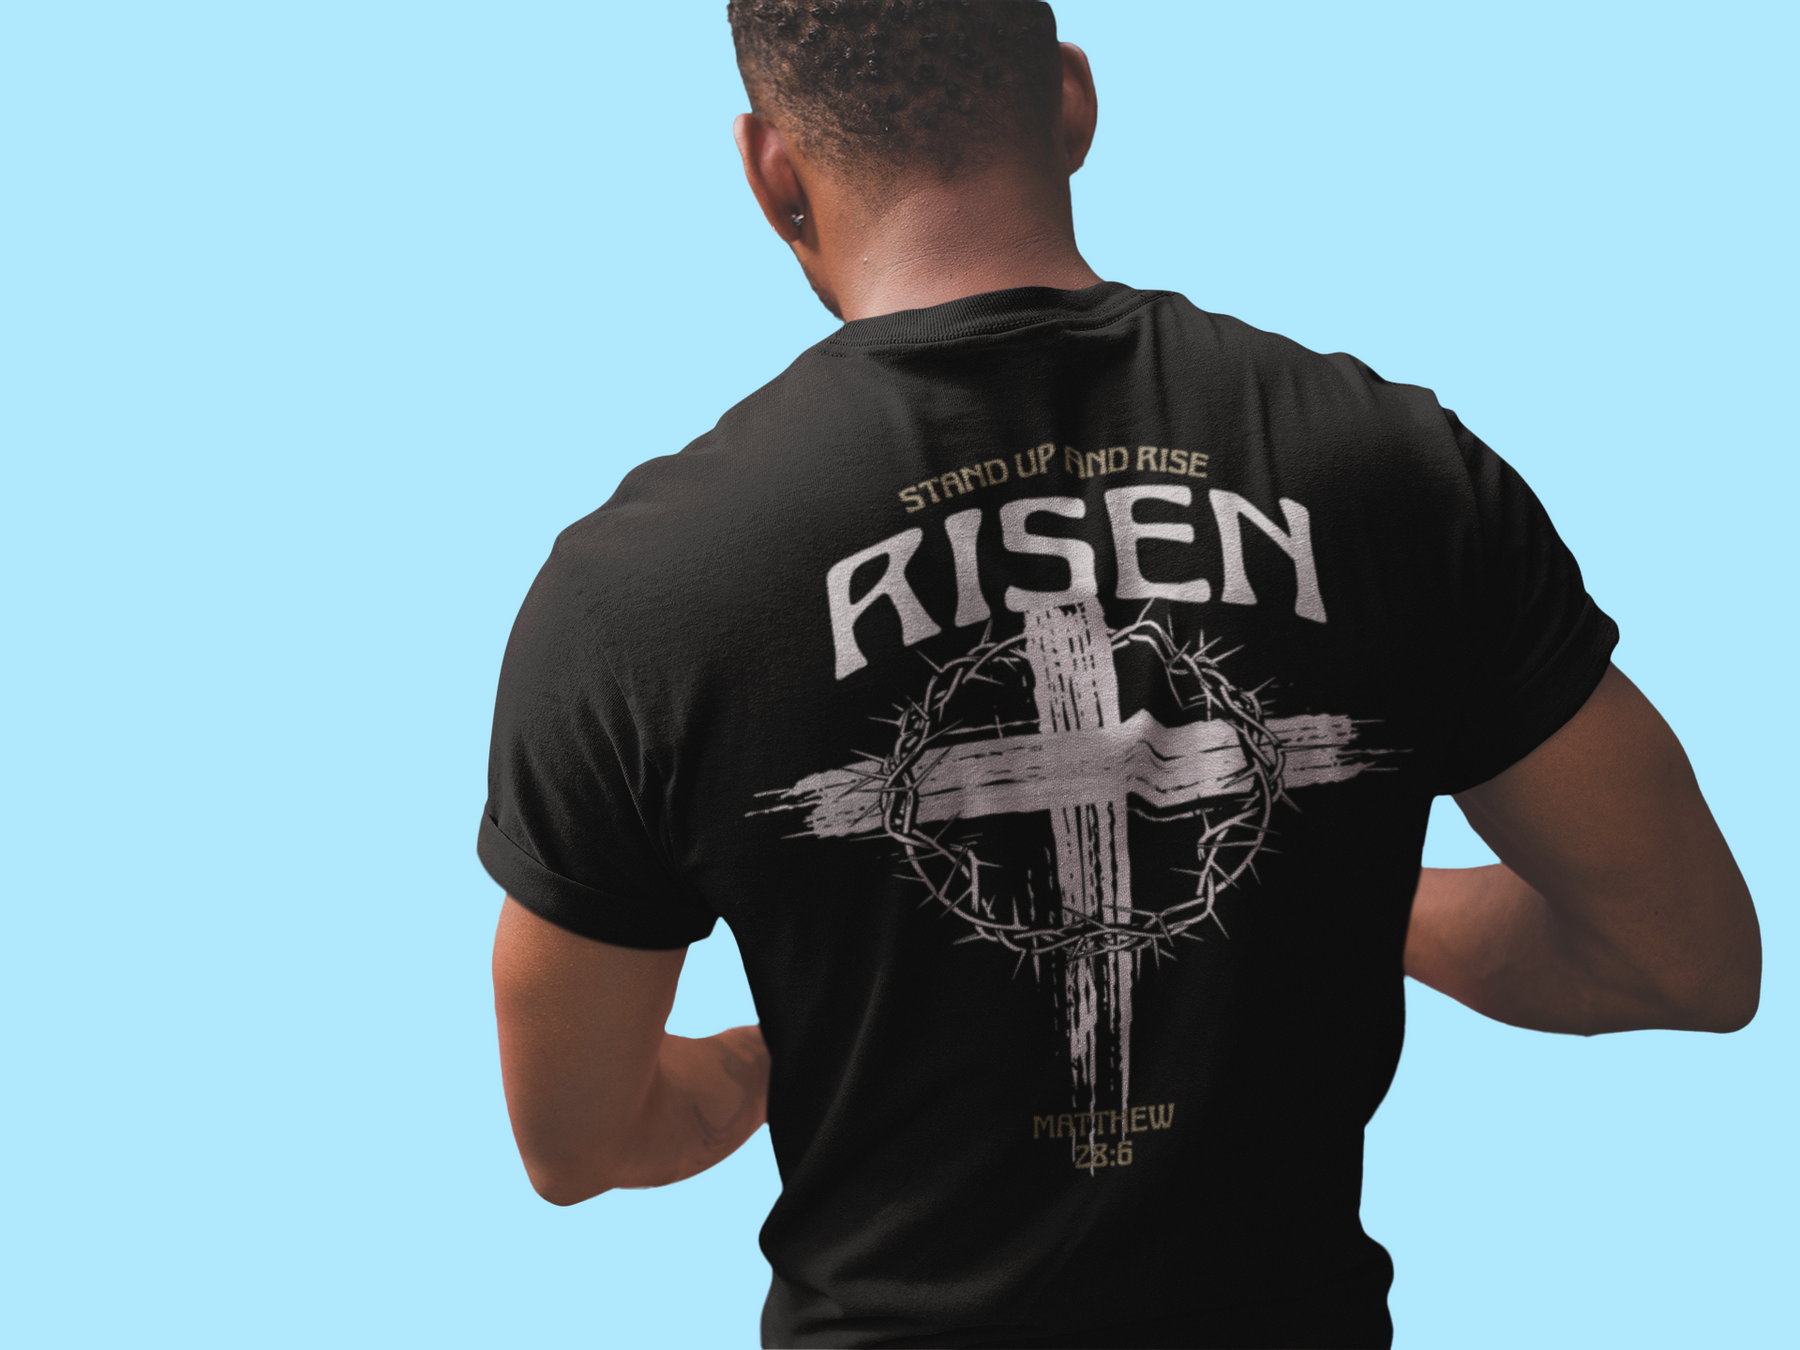 DanielEden t shirt " Risen "